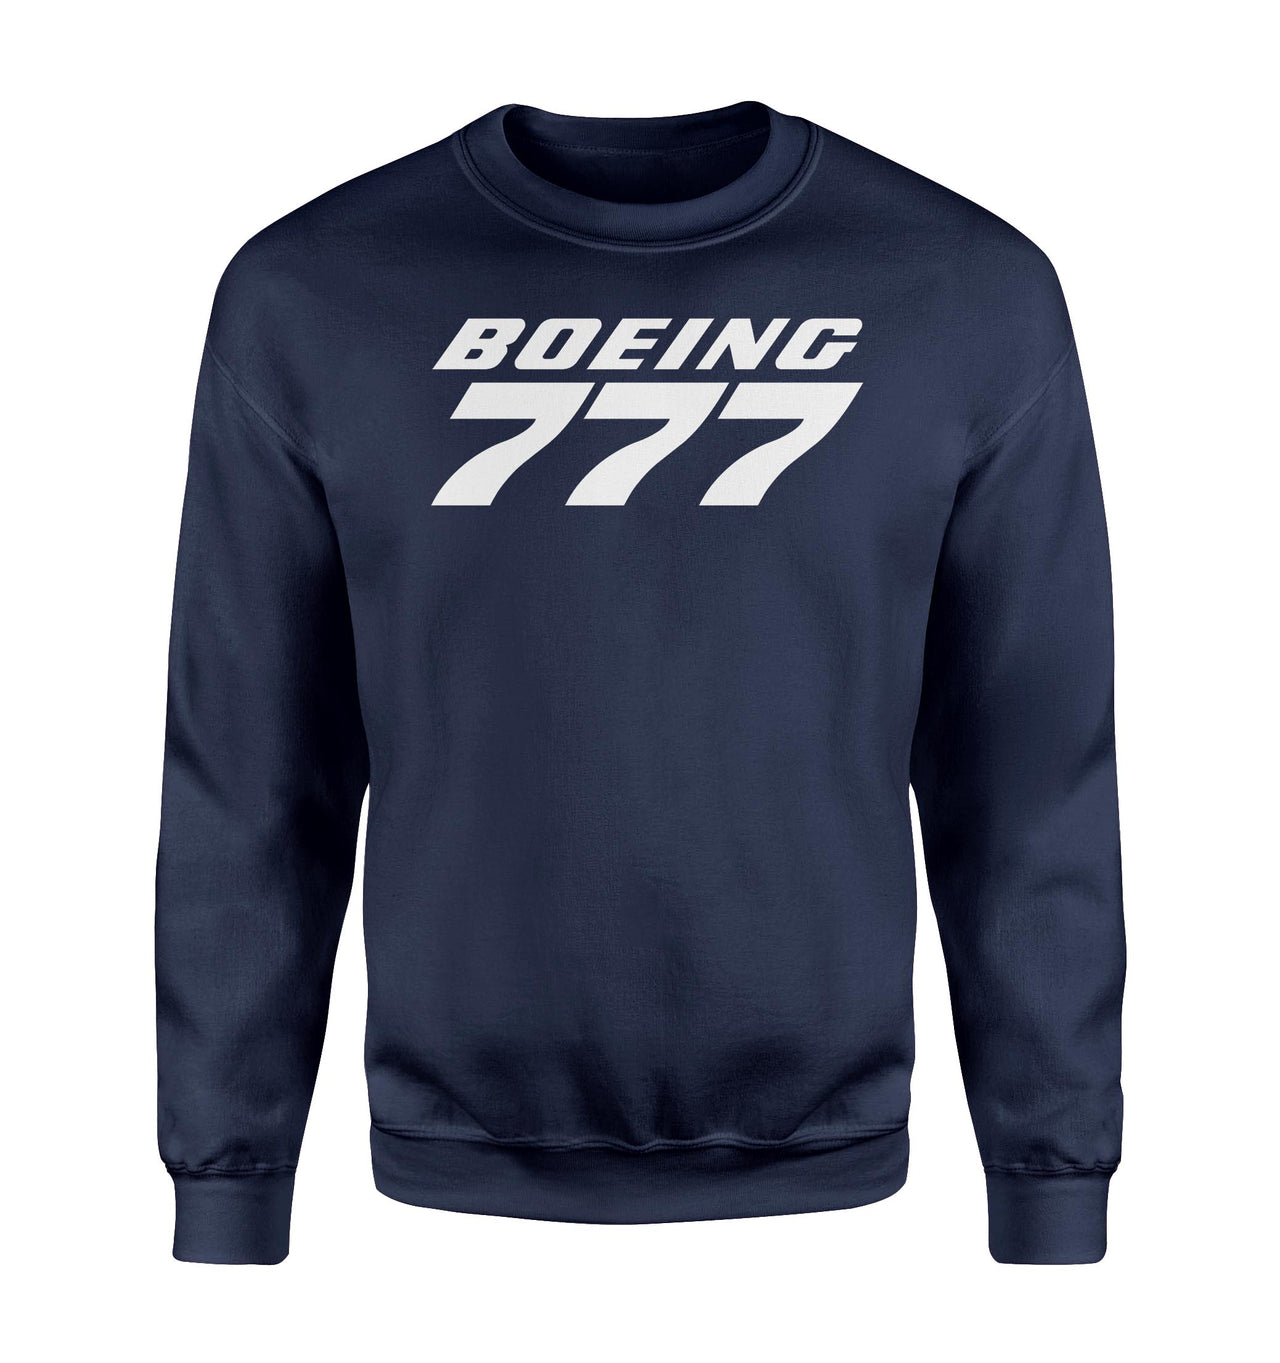 Boeing 777 & Text Designed Sweatshirts